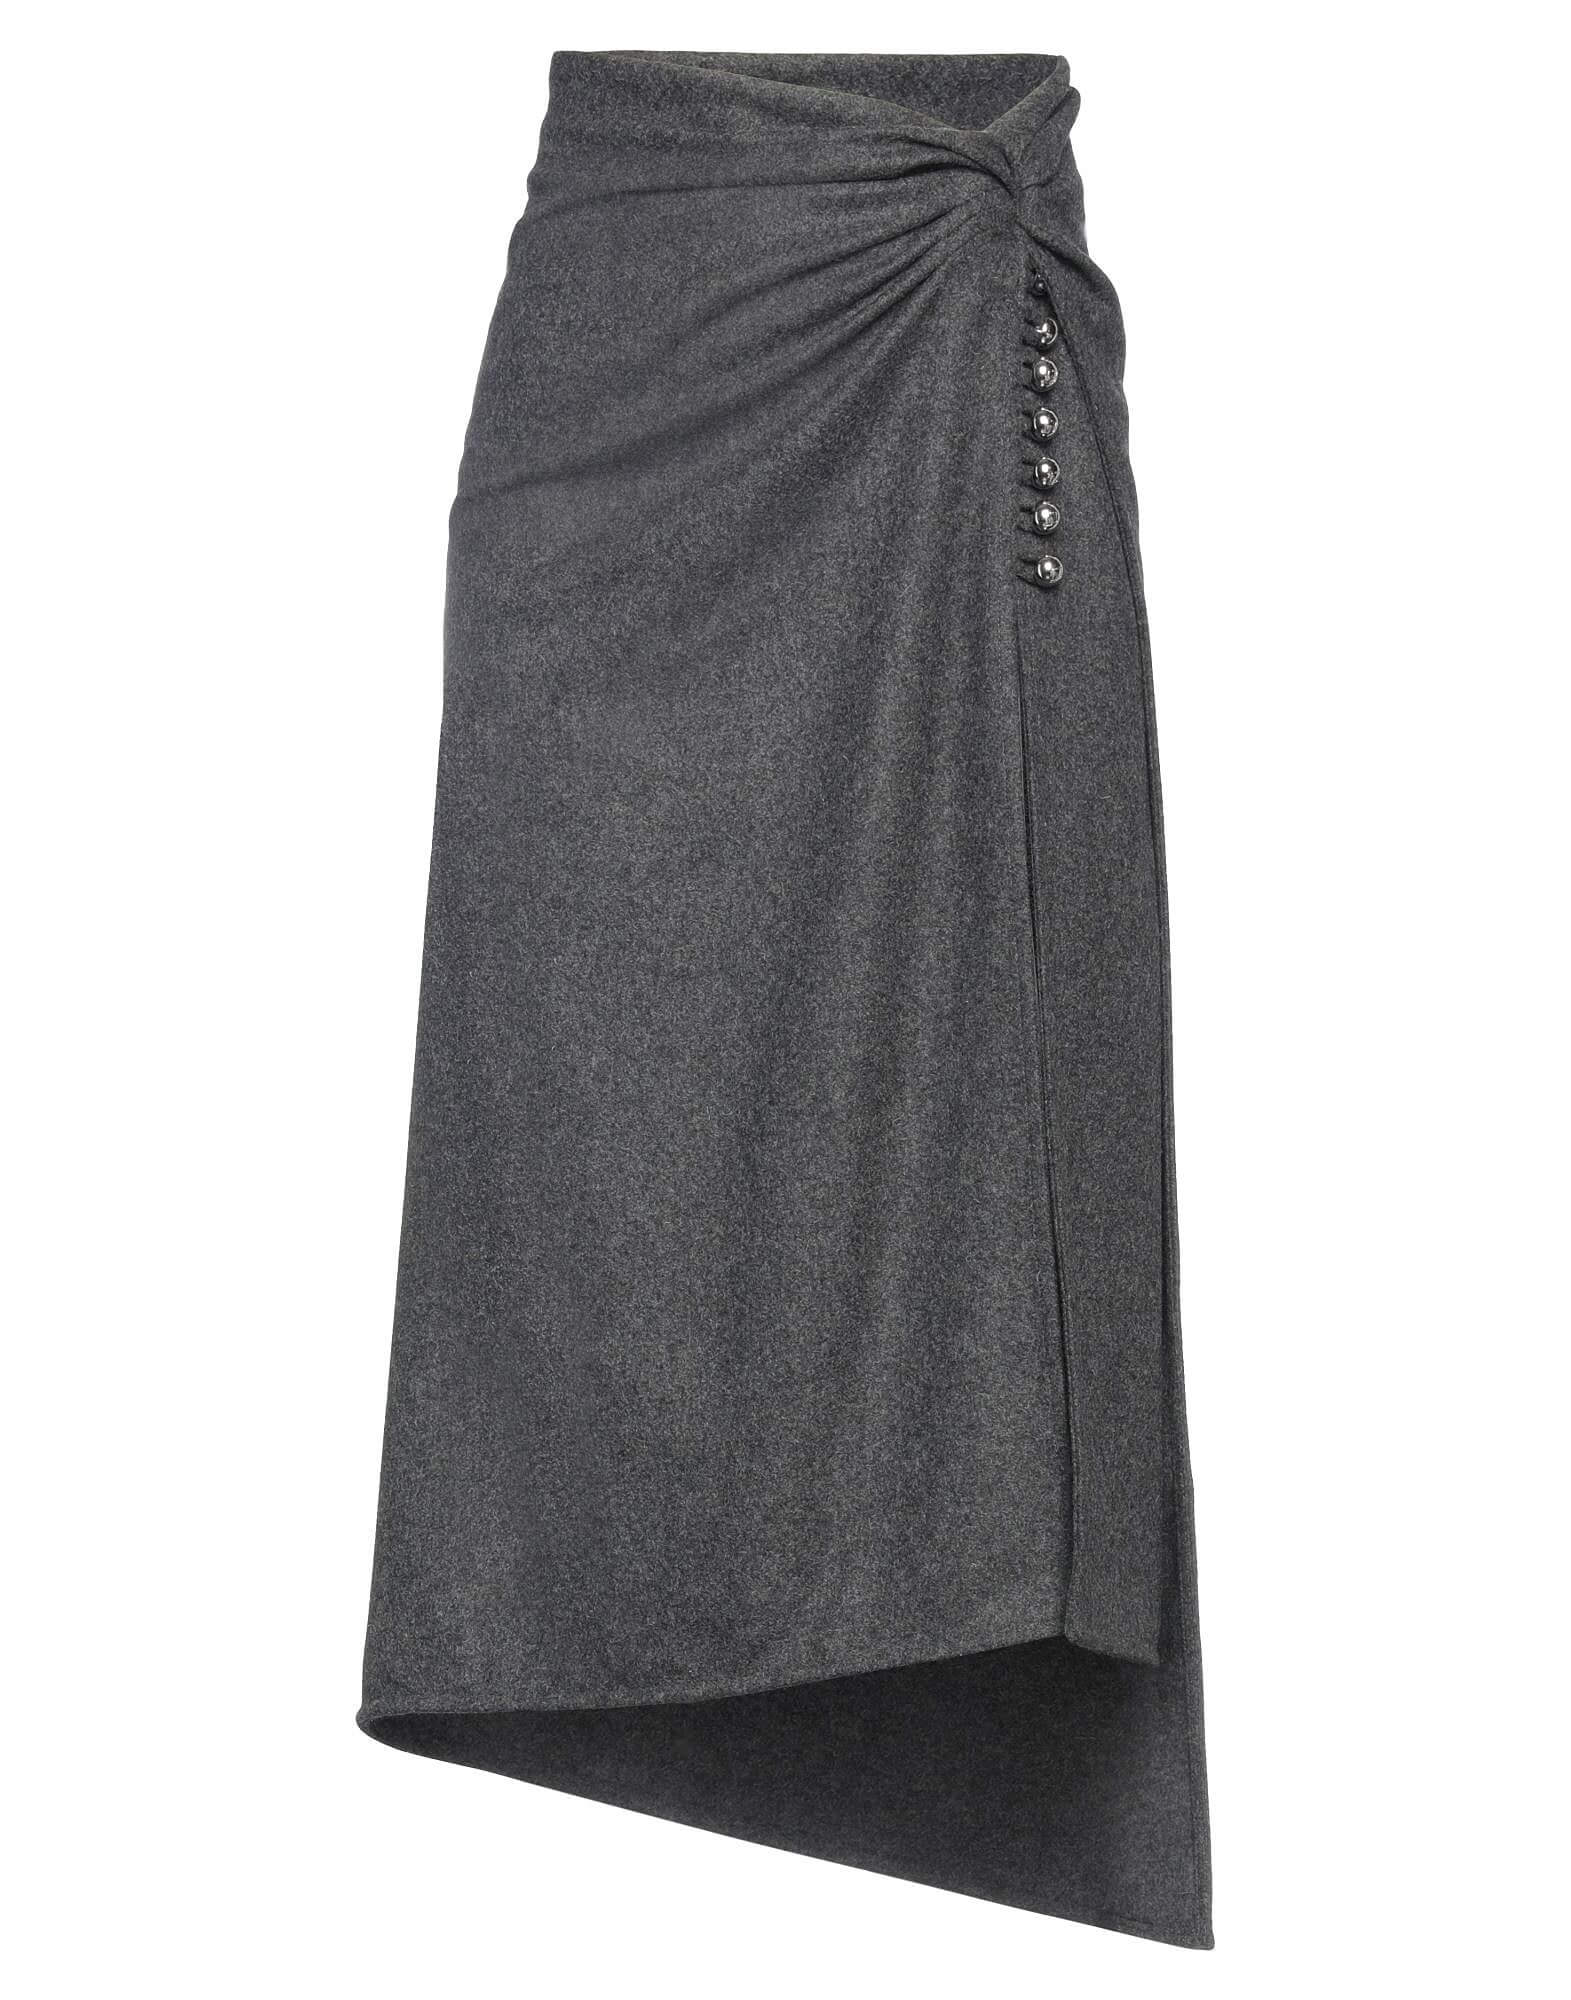 Юбка Paco Rabanne Midi, серый юбка плисированная миди